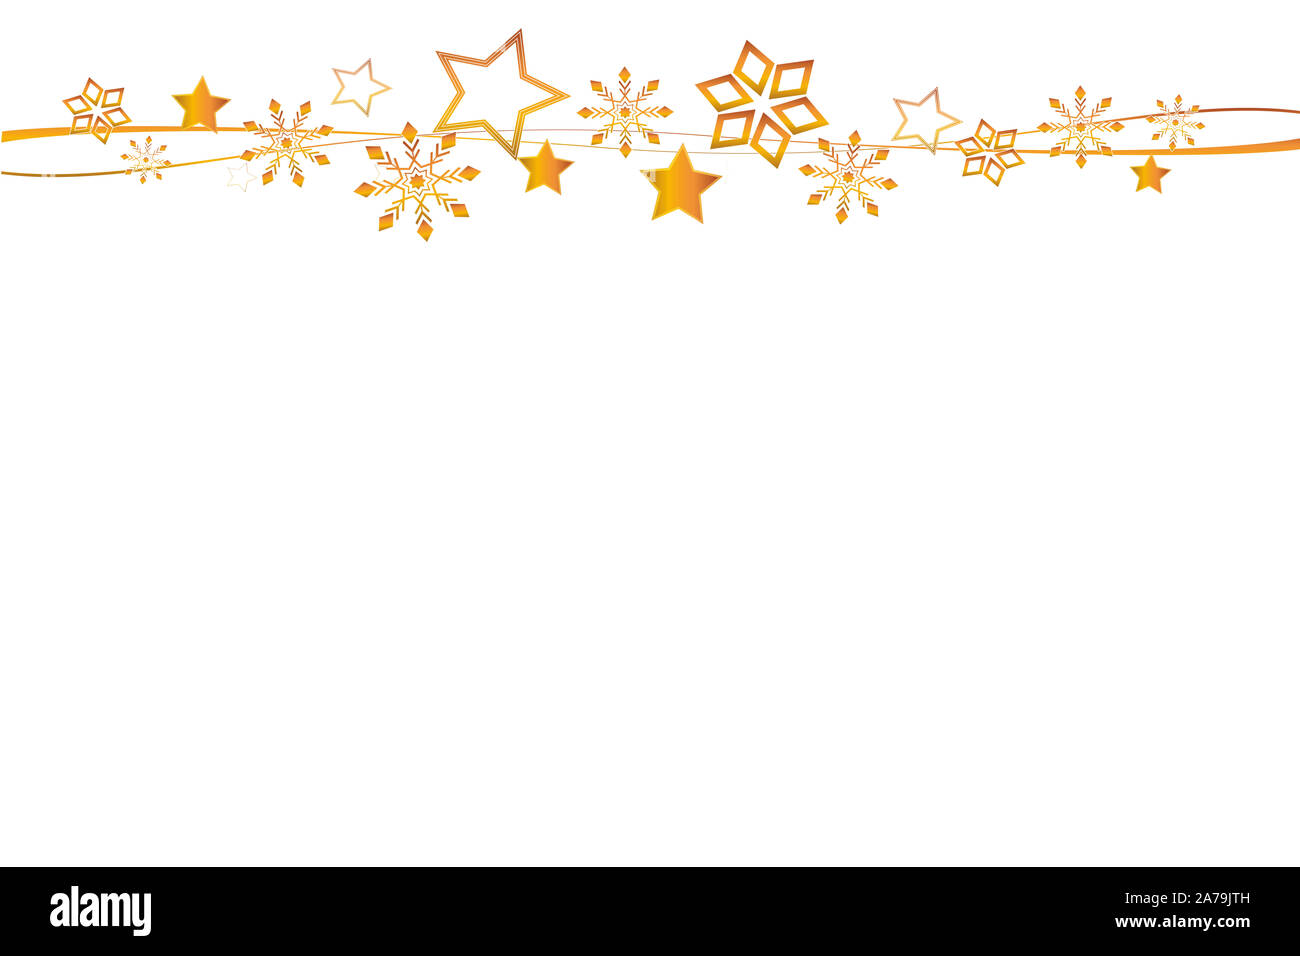 Hintergrund Weihnachten mit goldenen Sternen als Rahmen mit Kopie Raum  Stockfotografie - Alamy